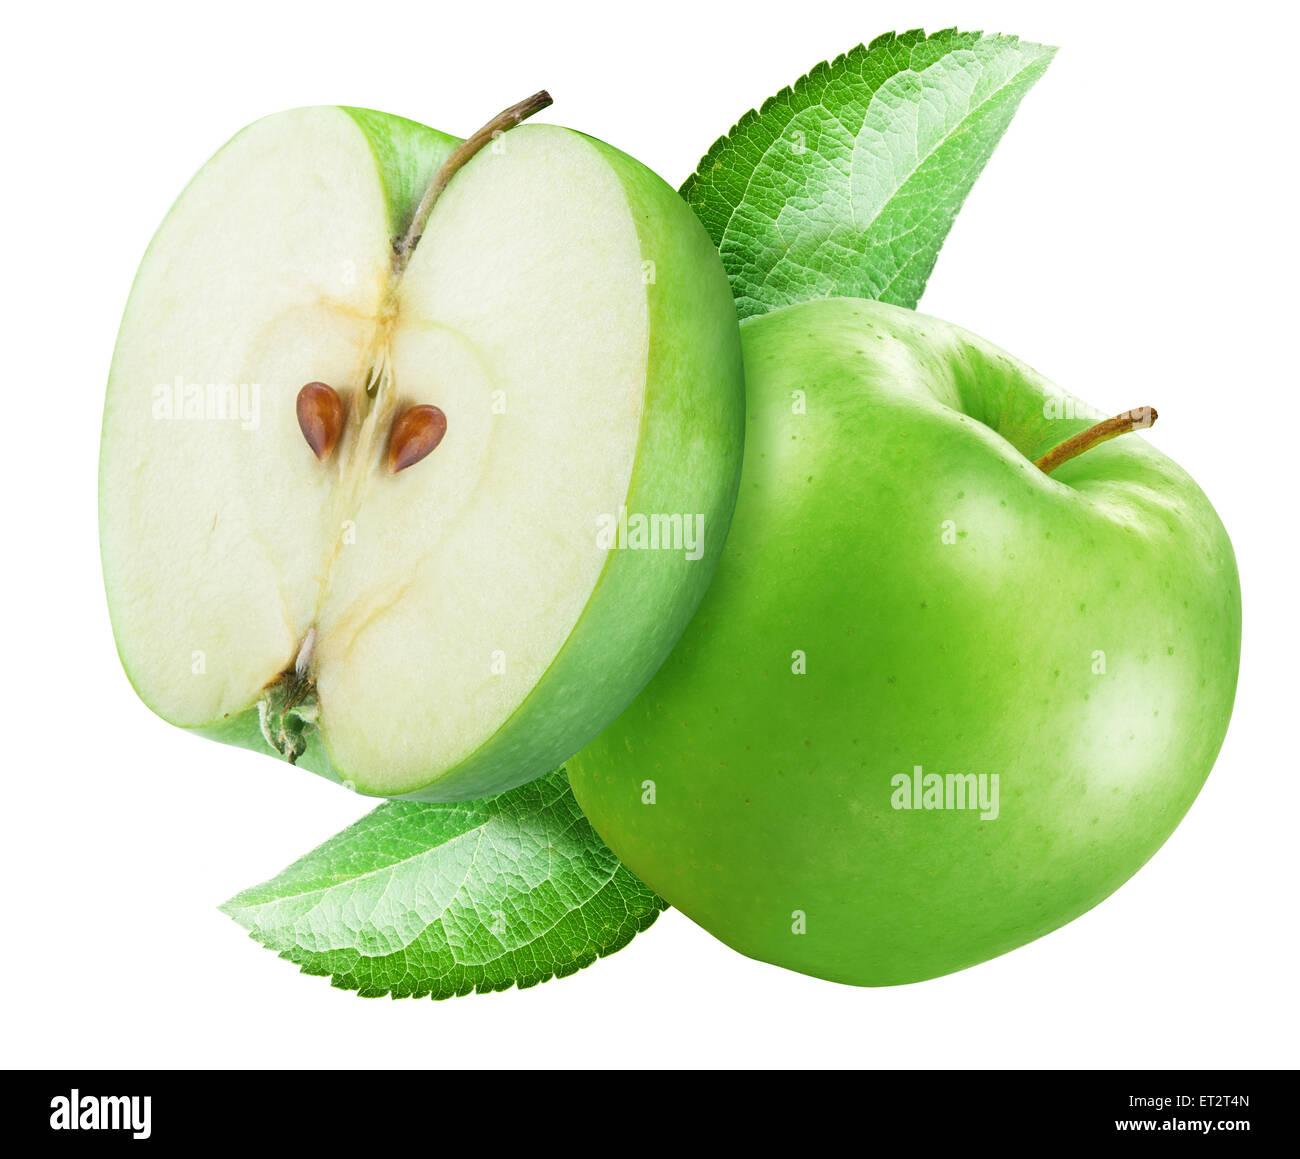 Mela verde e una metà di apple. Il file contiene i tracciati di ritaglio. Foto Stock